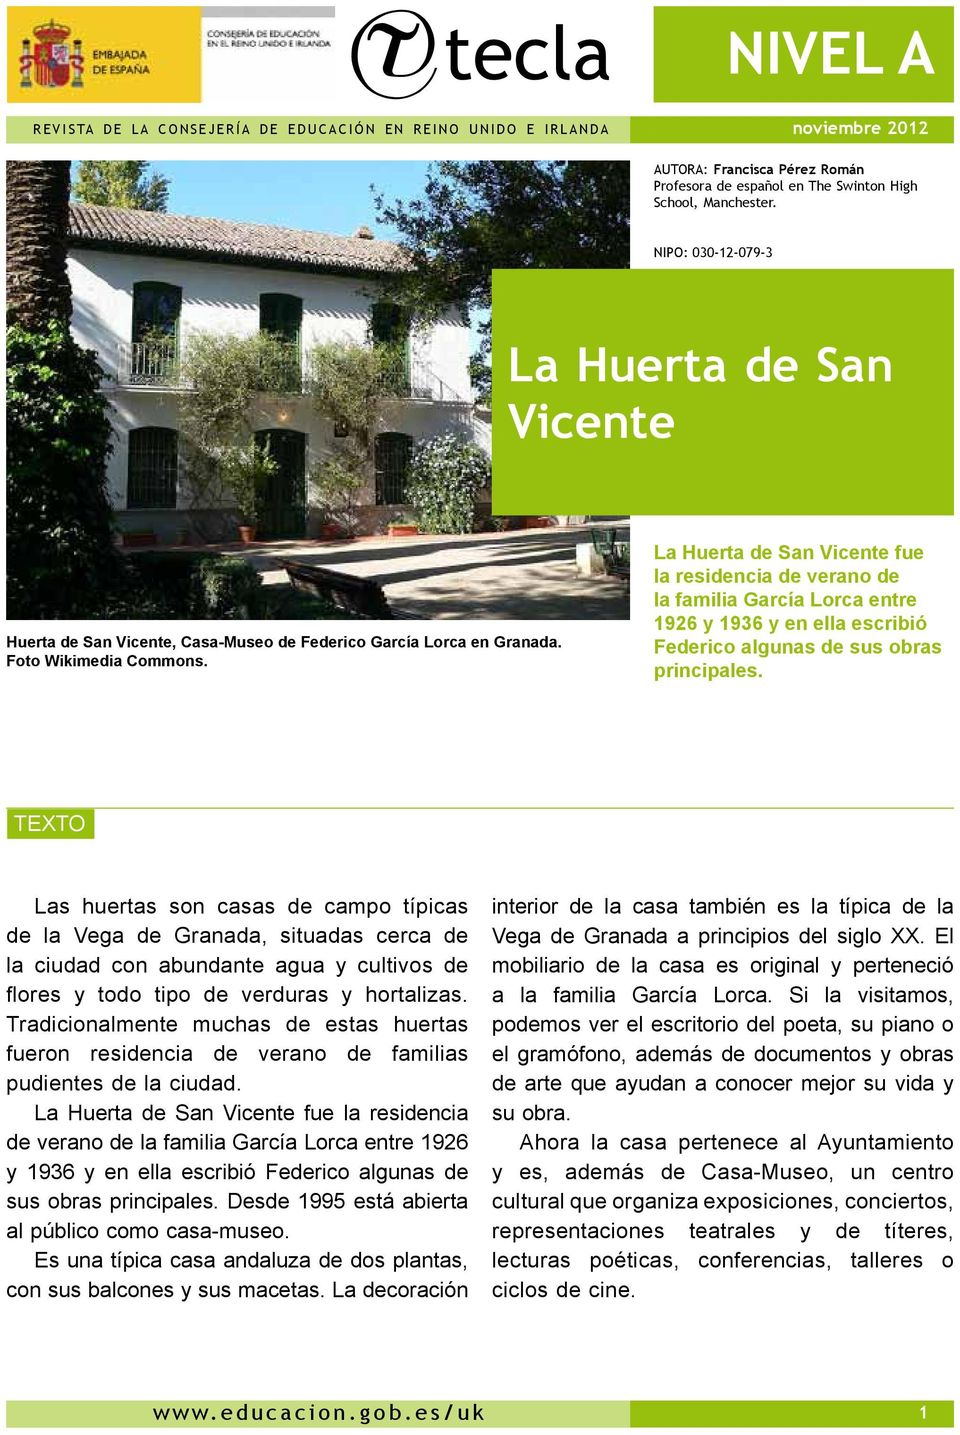 La Huerta de San Vicente fue la residencia de verano de la familia García Lorca entre 1926 y 1936 y en ella escribió Federico algunas de sus obras principales.